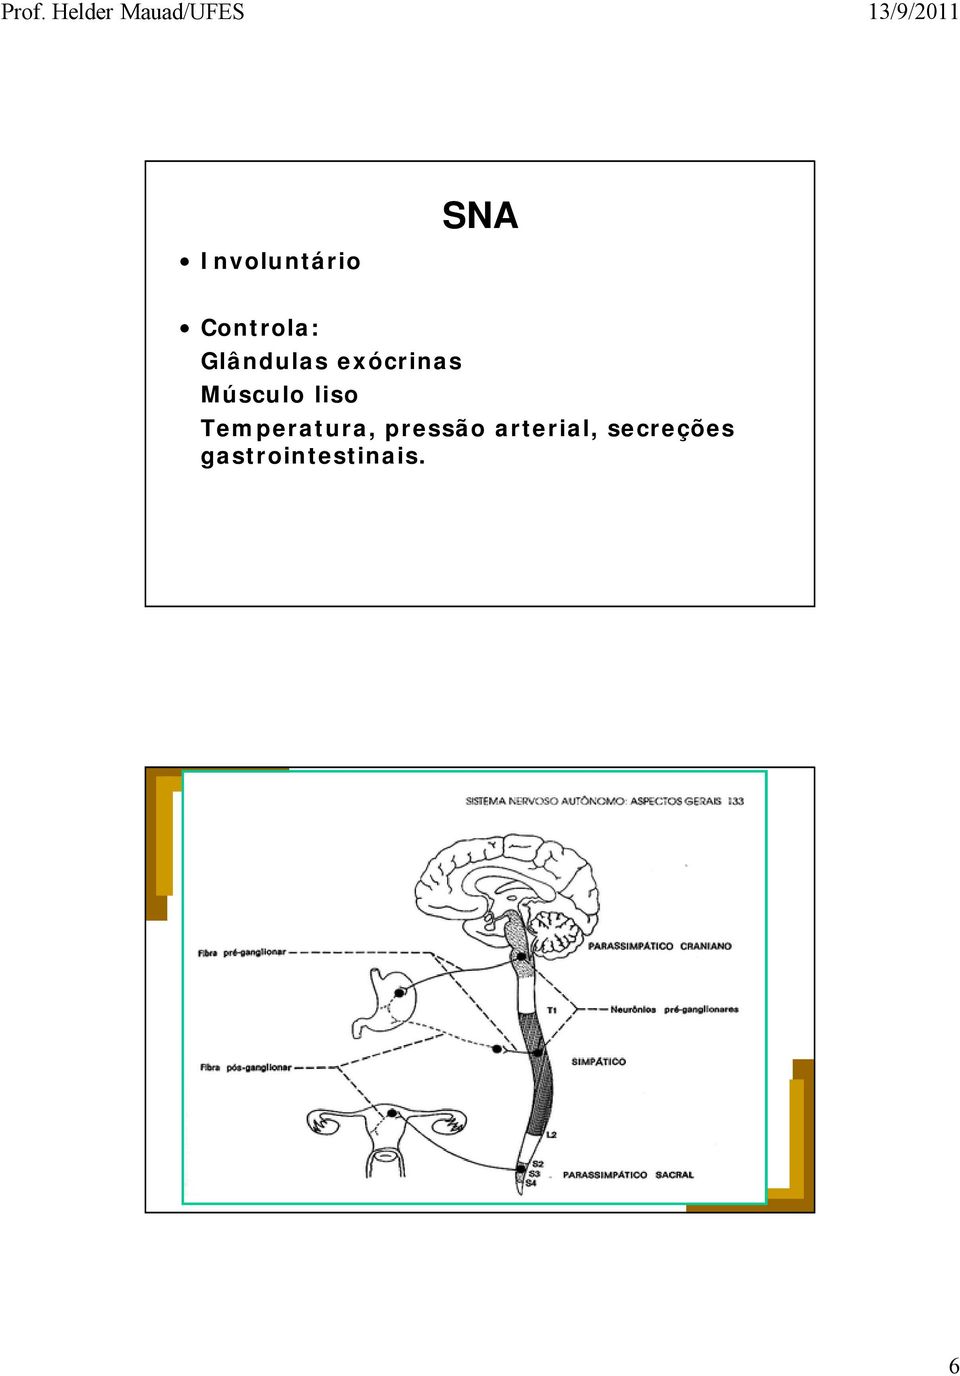 ORGANIZAÇÃO GERAL DO S.N.A. Neurônio Pré-ganglionar - corpo dentro do SNC.